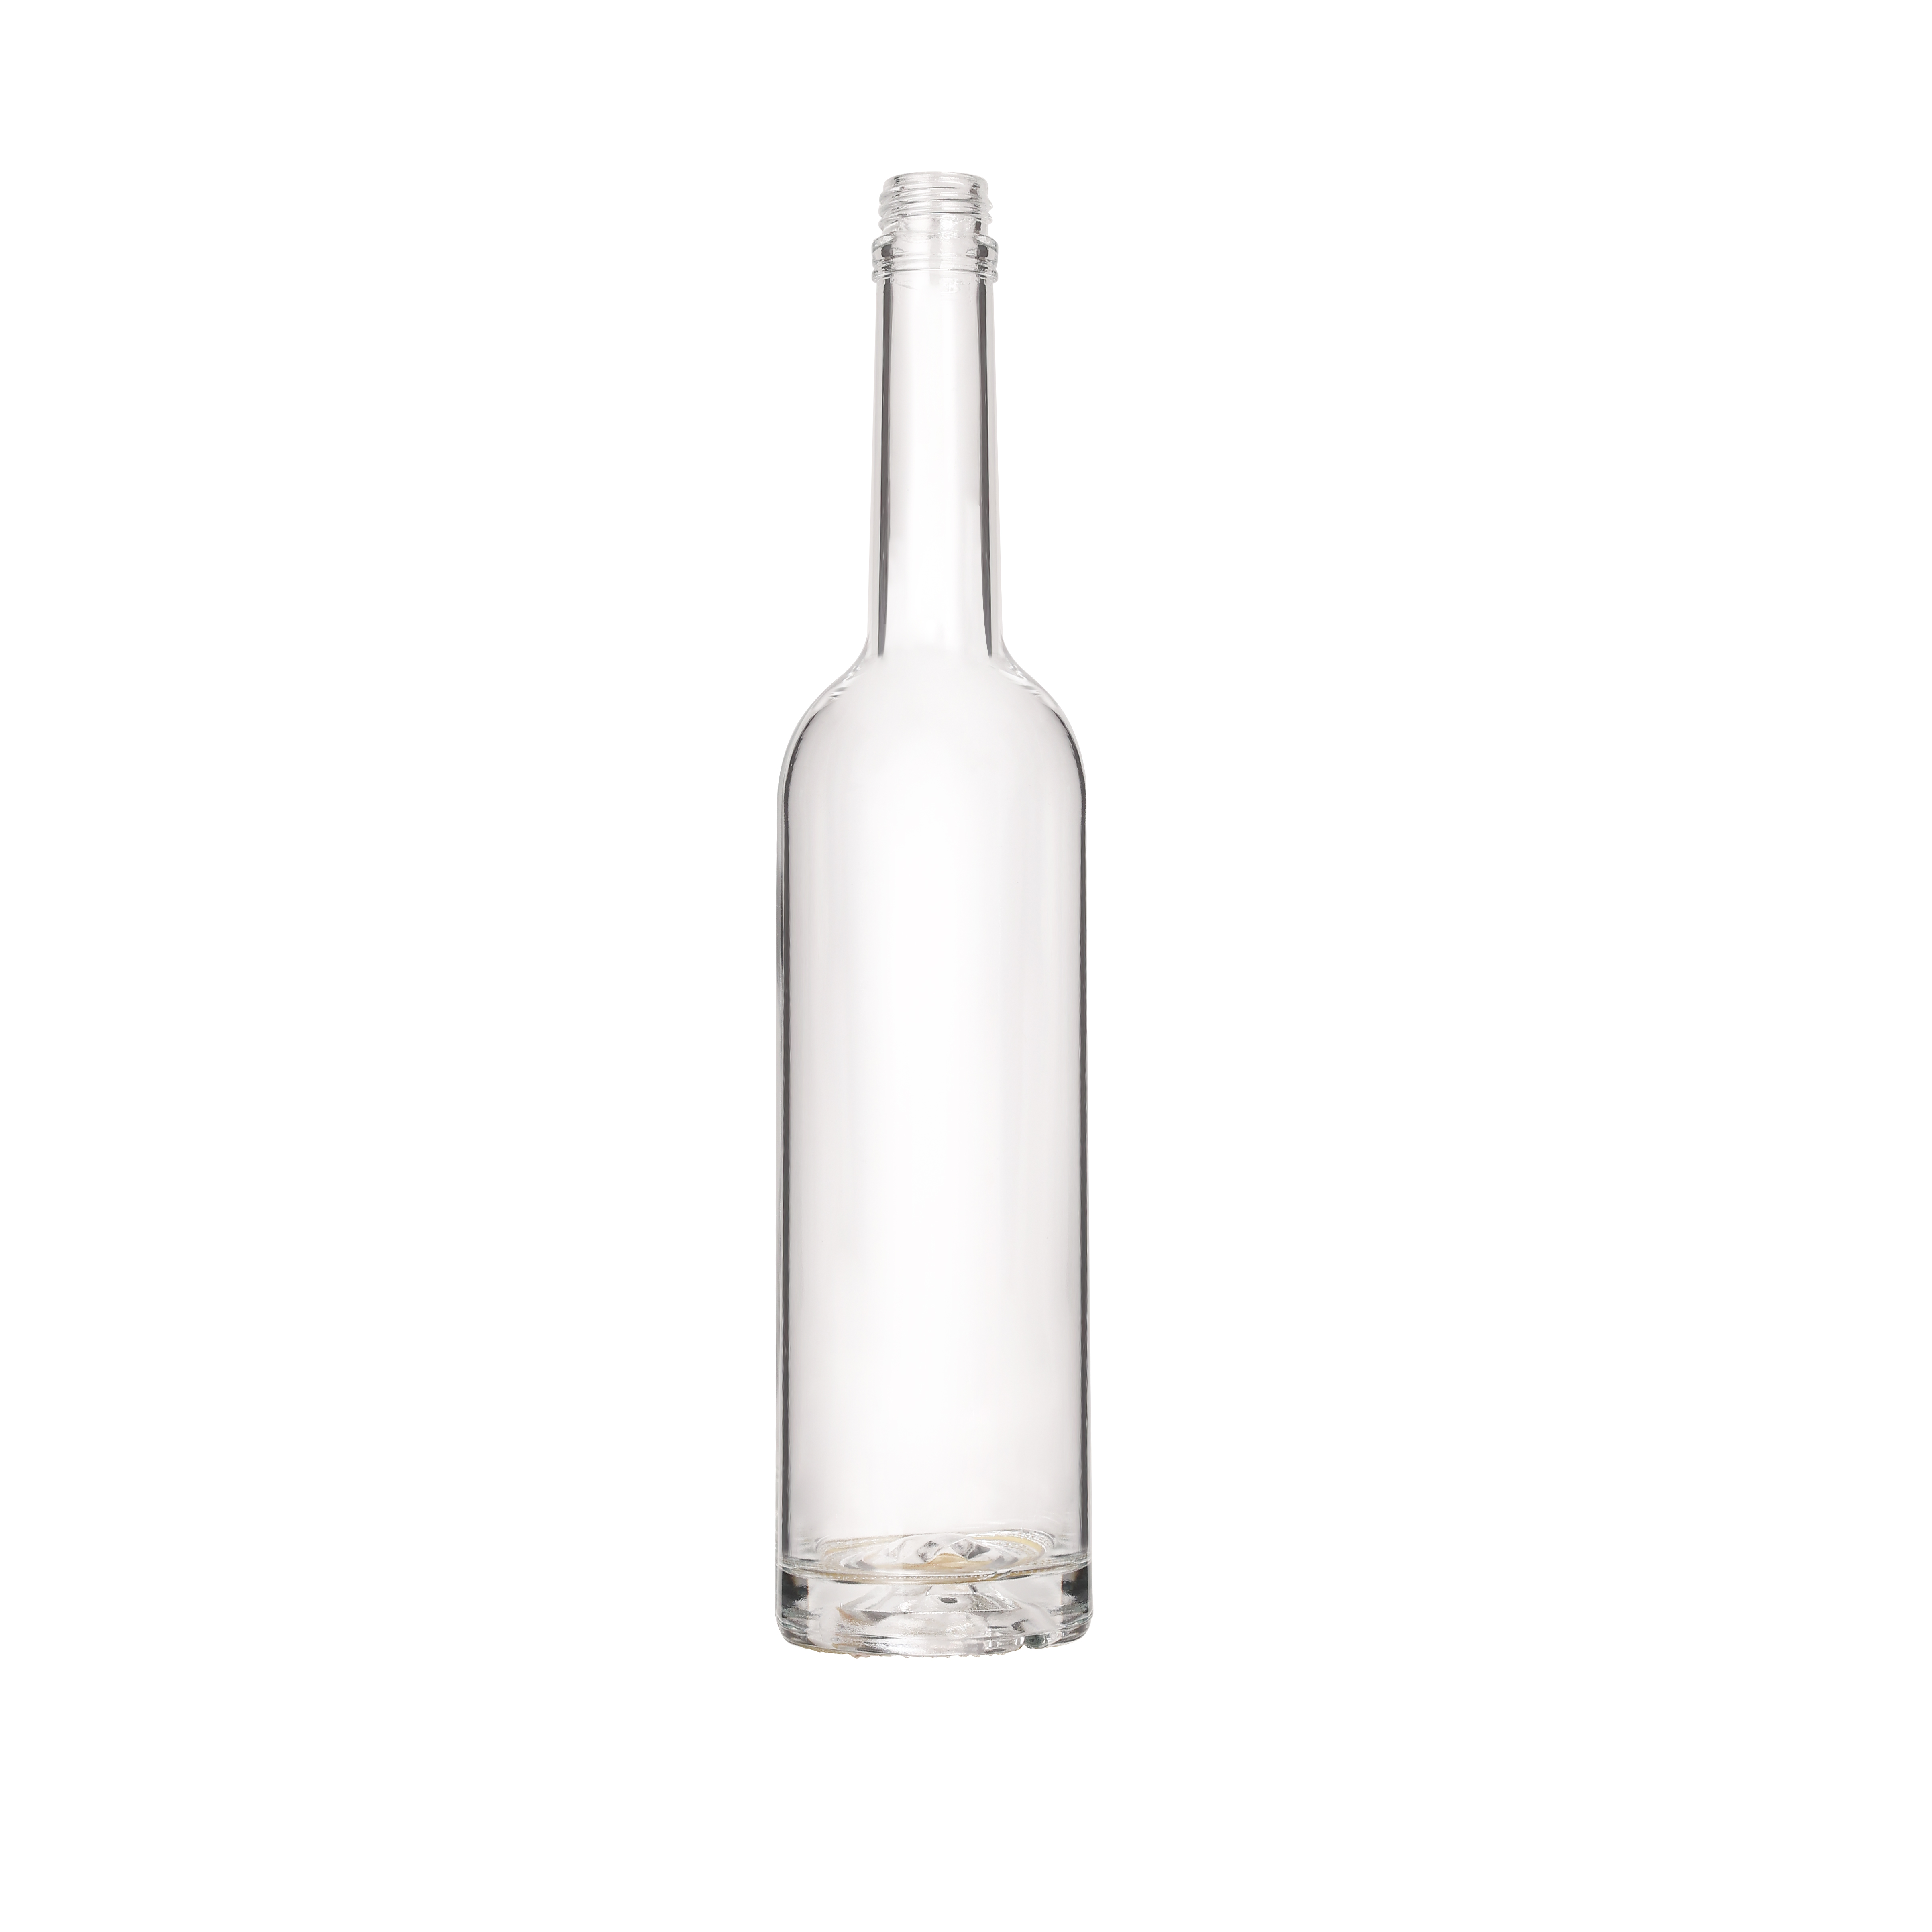 Glass Bottles Alcohol Drinking Liquor Bottle